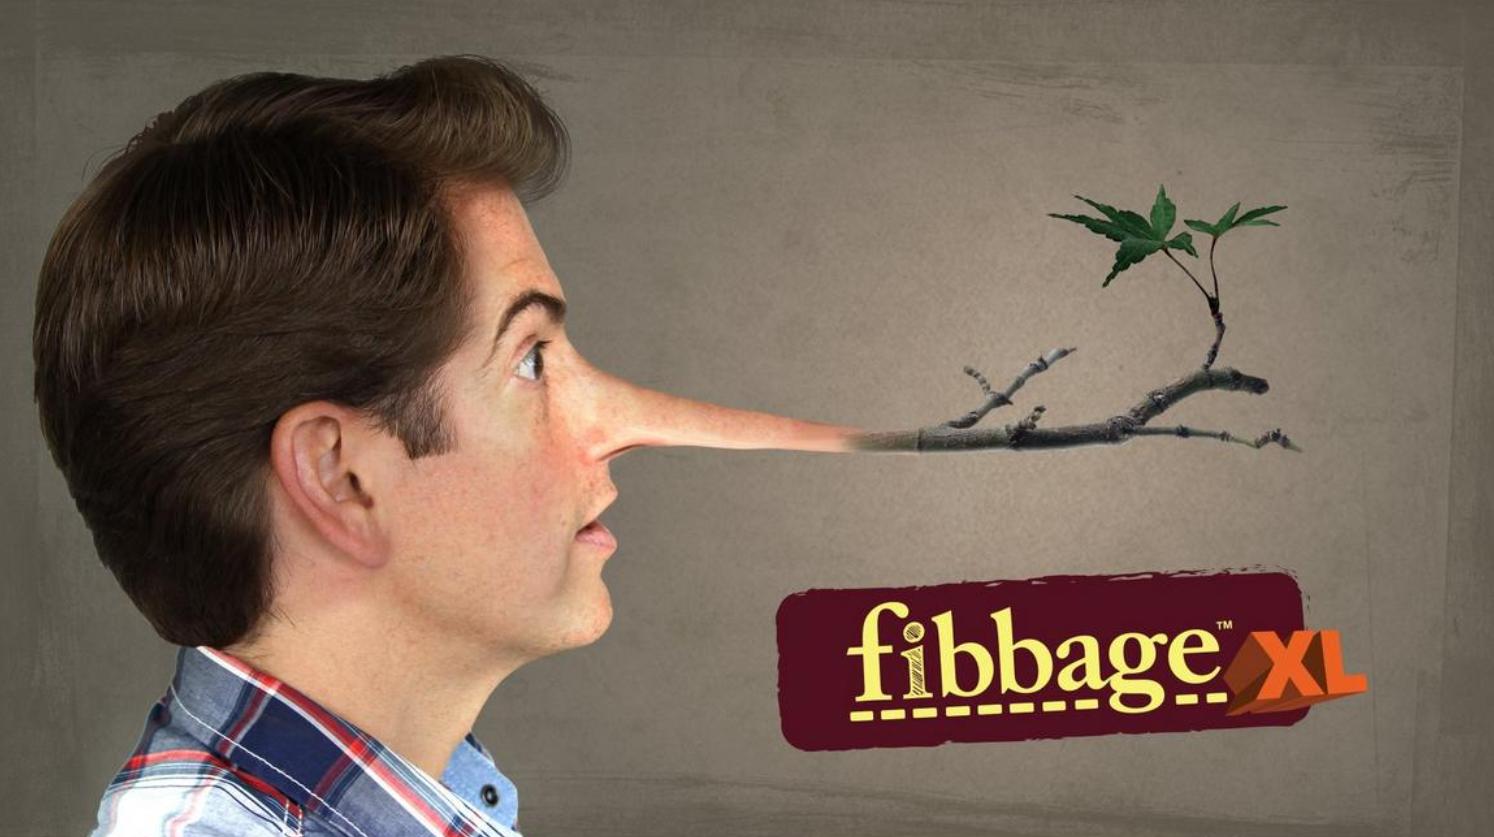 Fibbage Xl Image